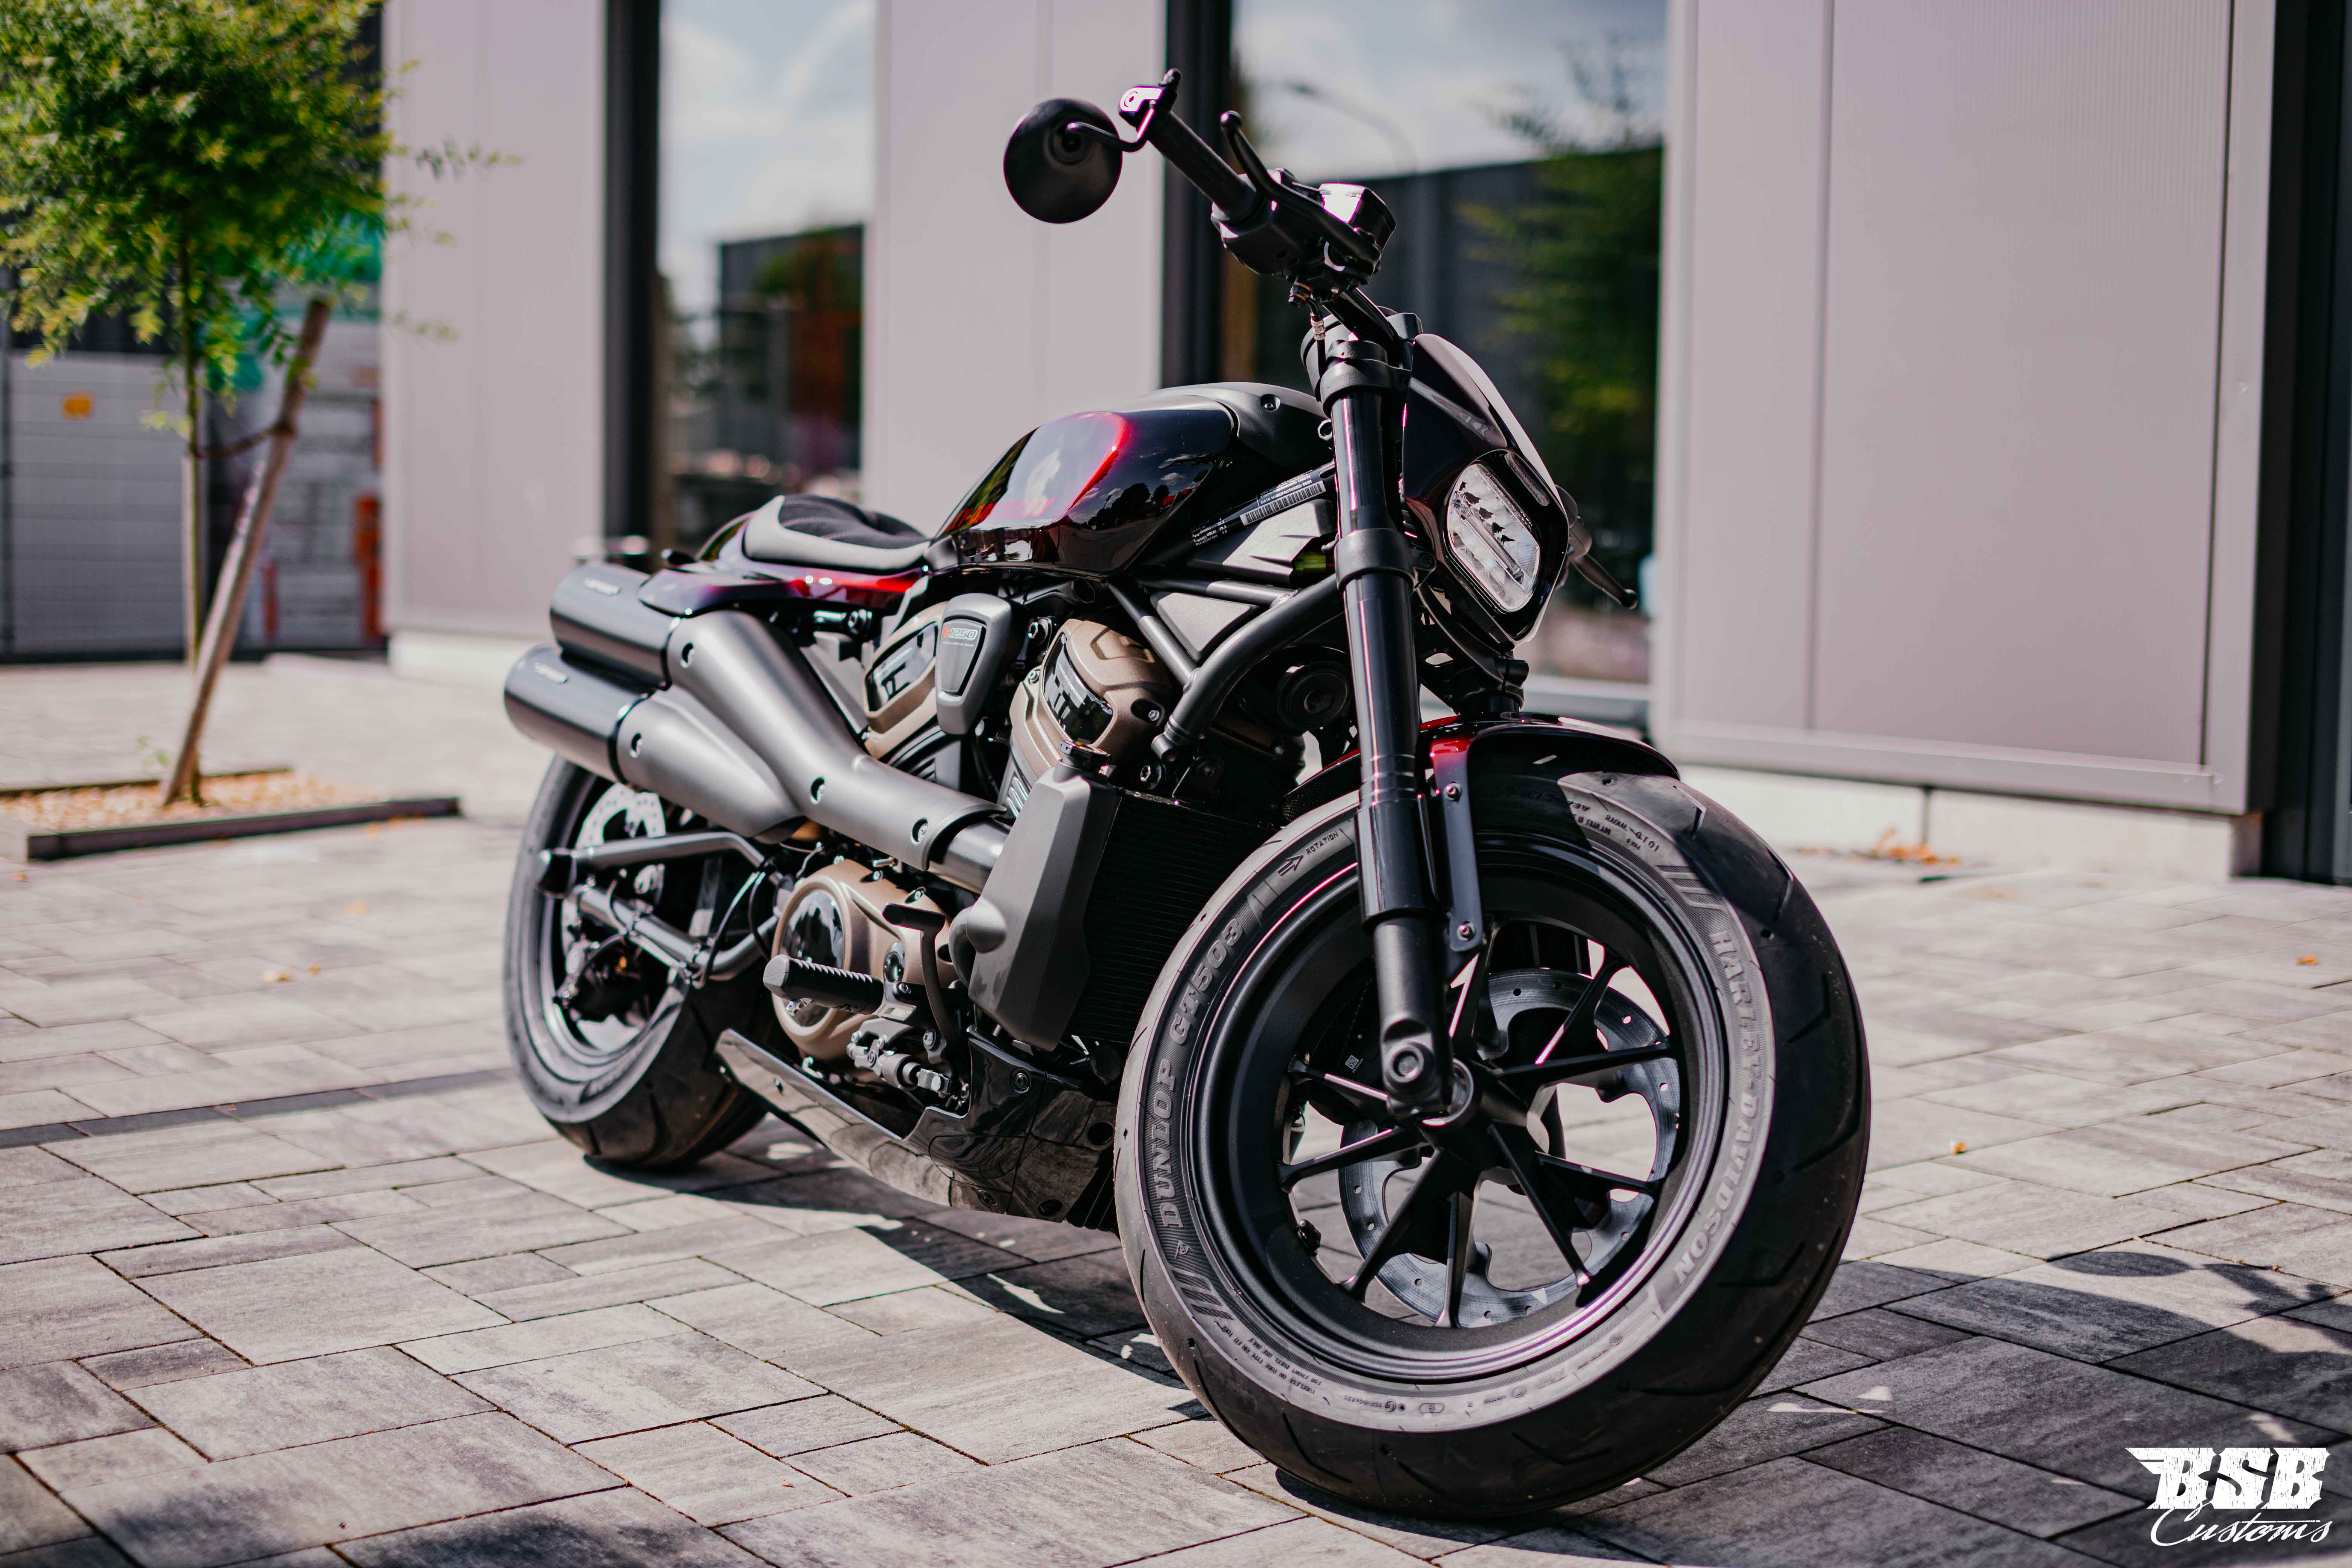 2022 Harley Davidson Sportster S 1252 ccm 90 kw volle Werksgarantie ab 293,- Finanzieren*